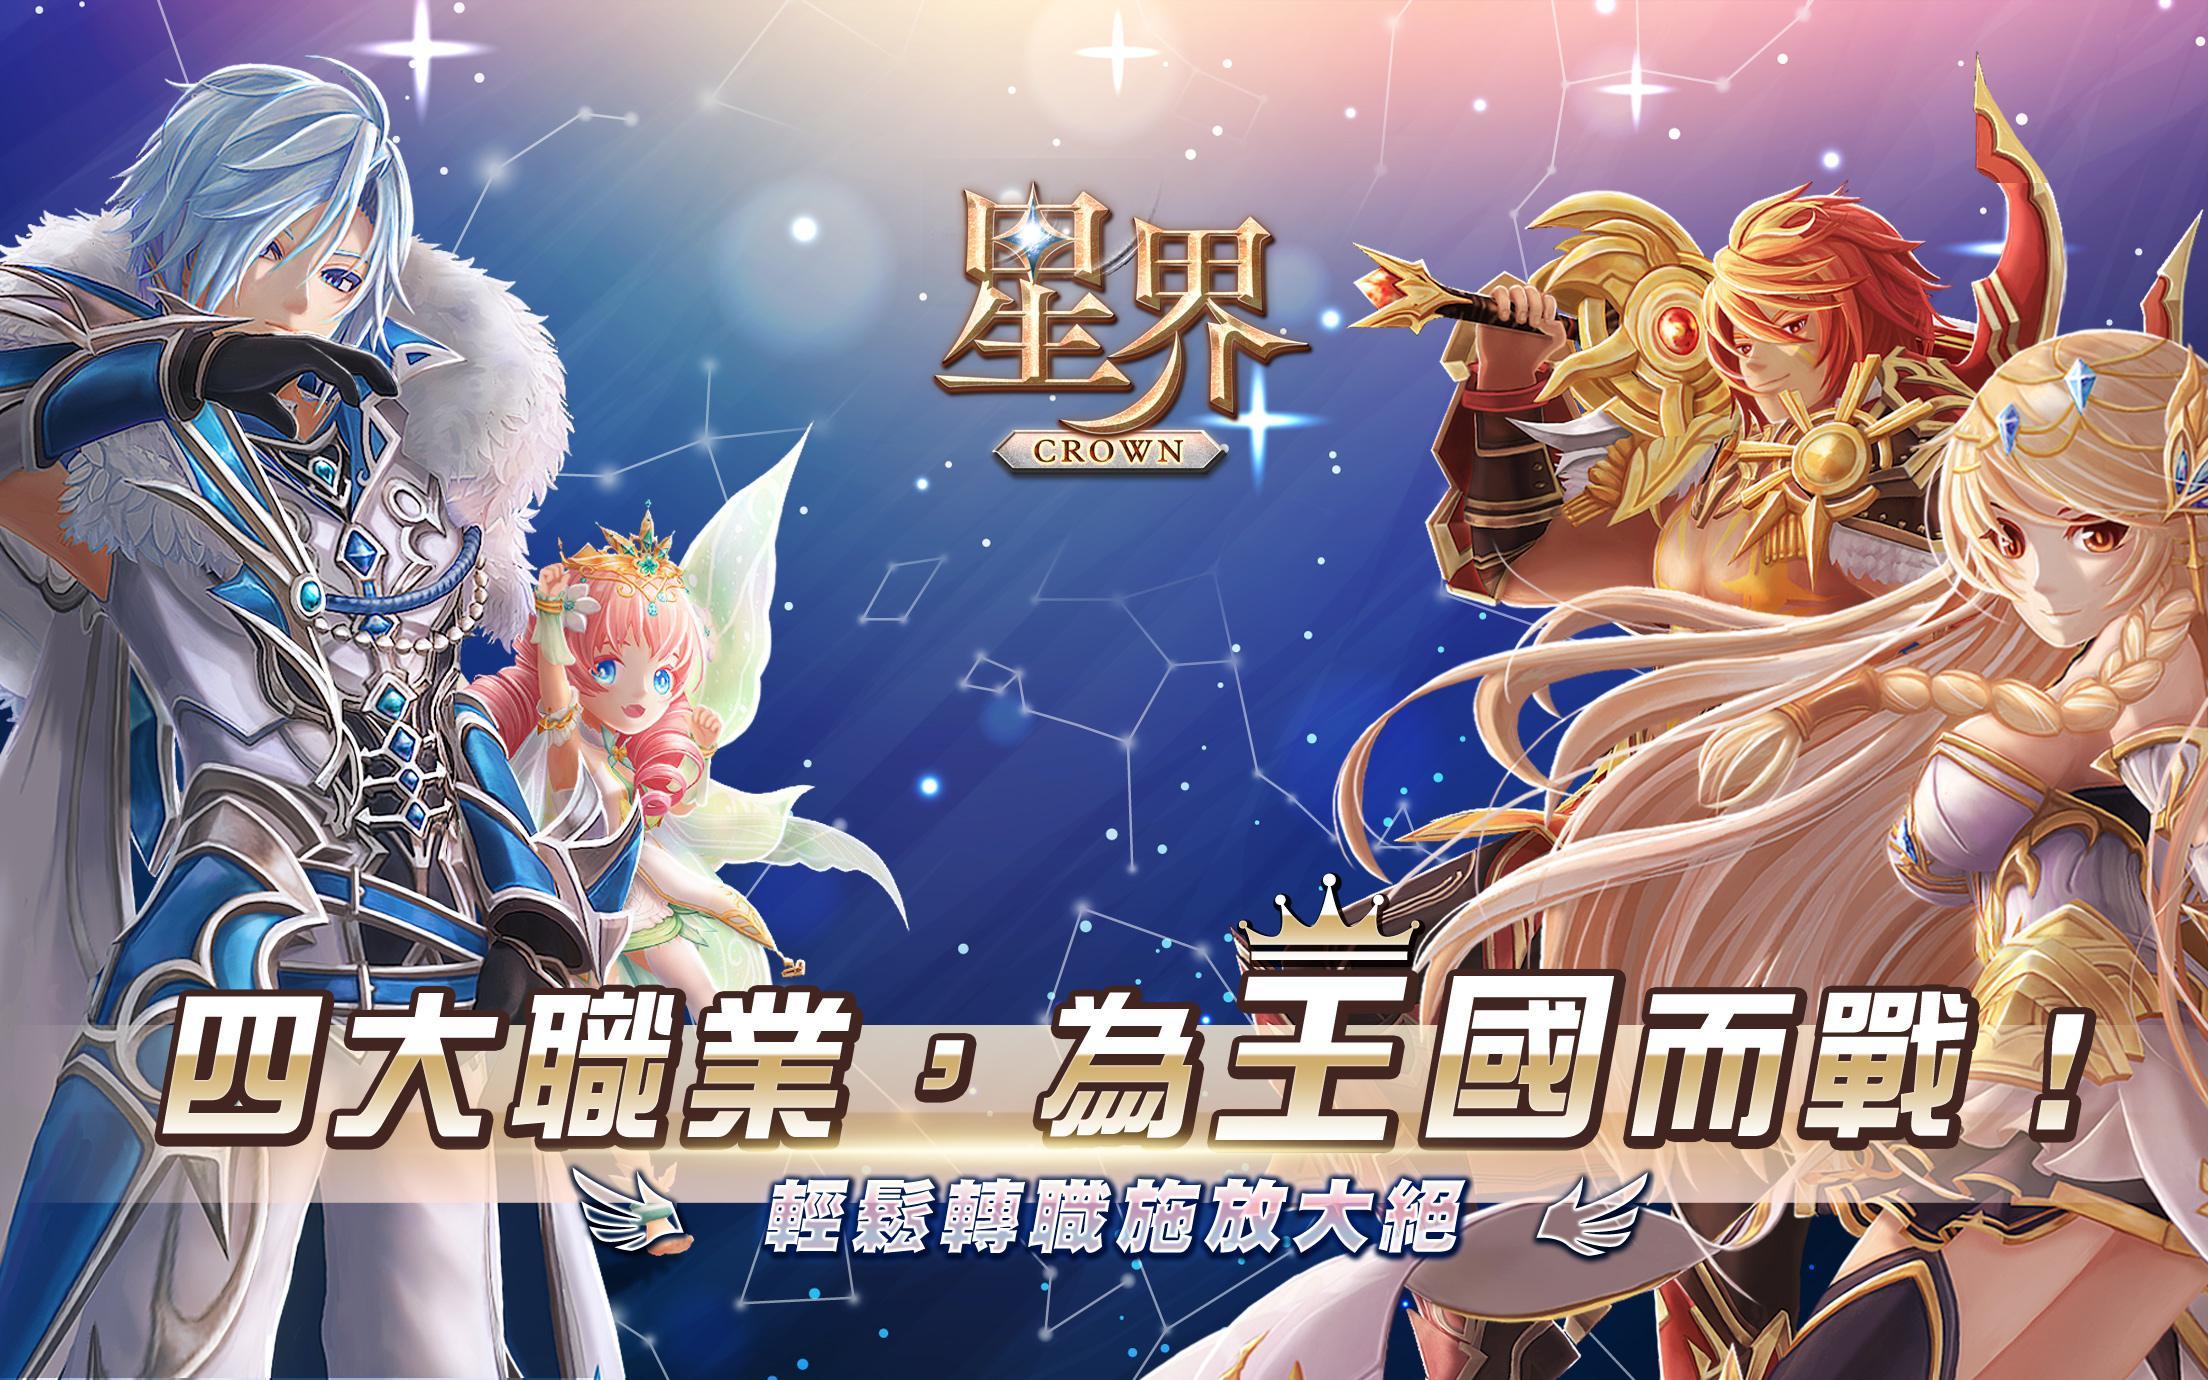 Banner of Astral: The Crown (Hong Kong at Macau Version) 11.0.1